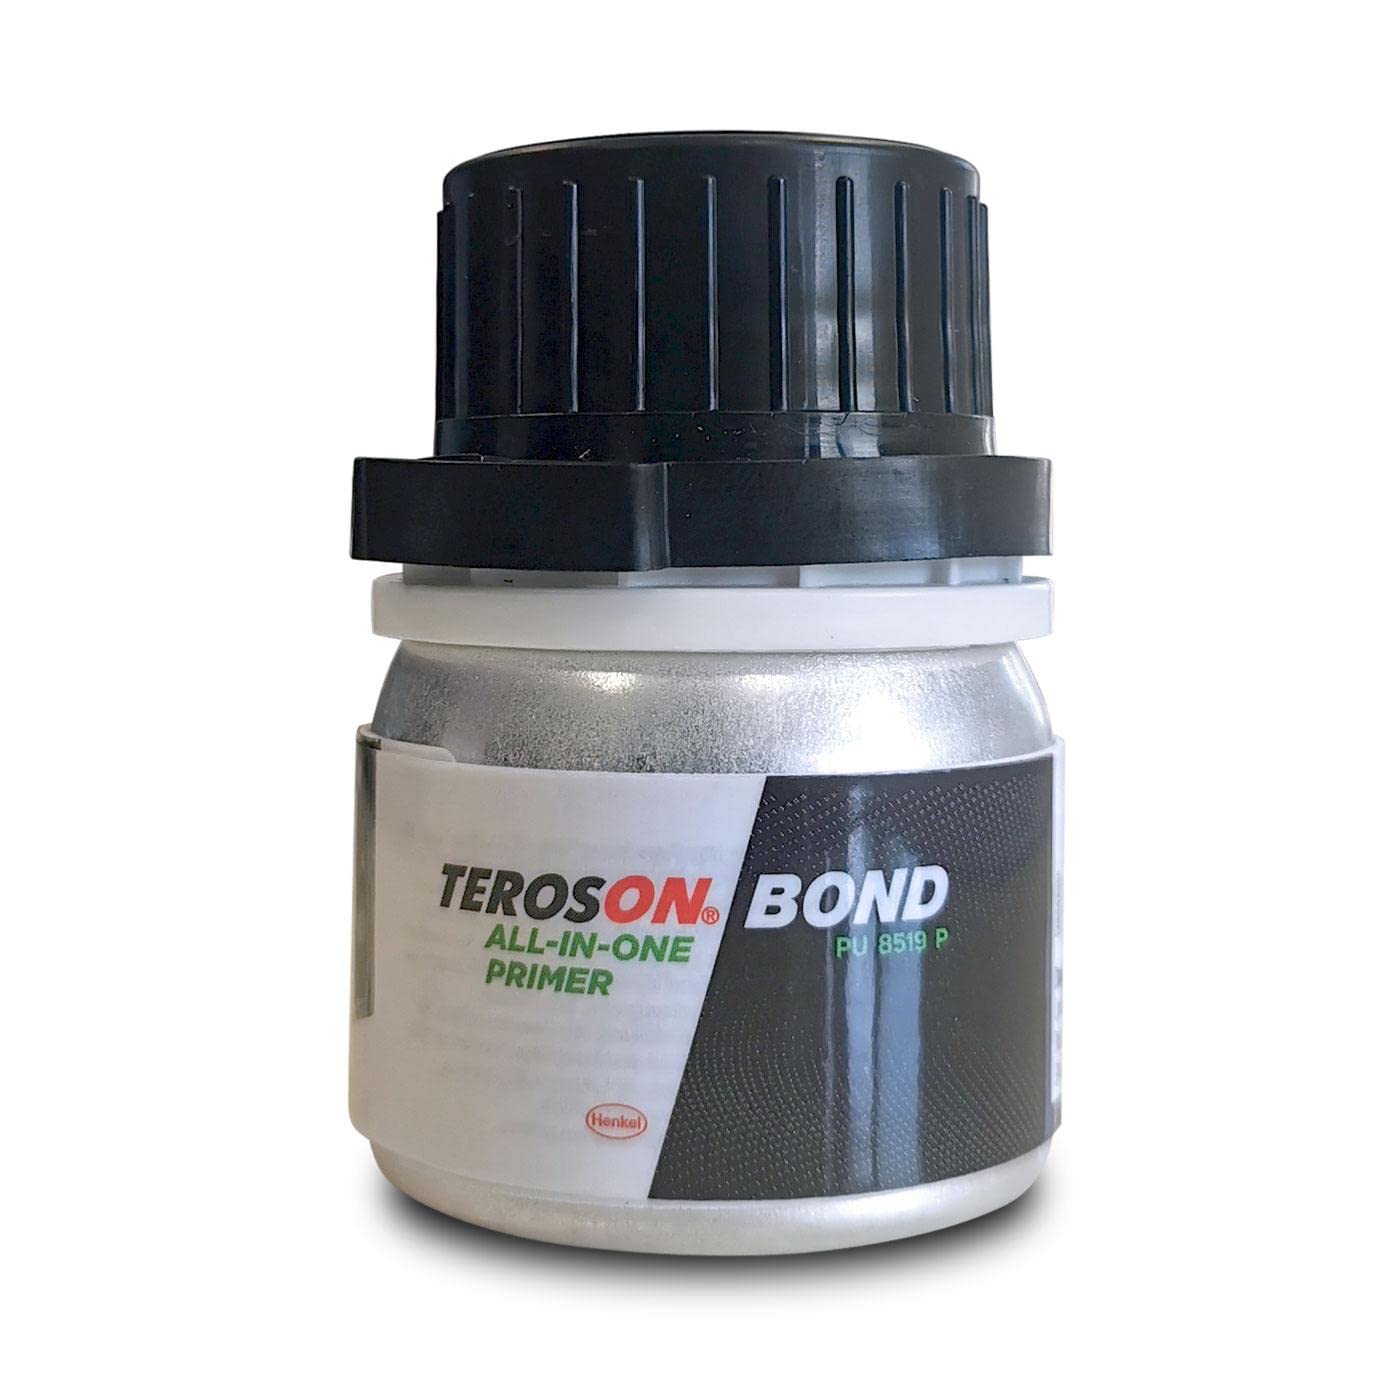 OC-PRO Teroson Bond 8519 P All-in-One, Primer für Windschutzscheibe, 25 ml von OC-PRO